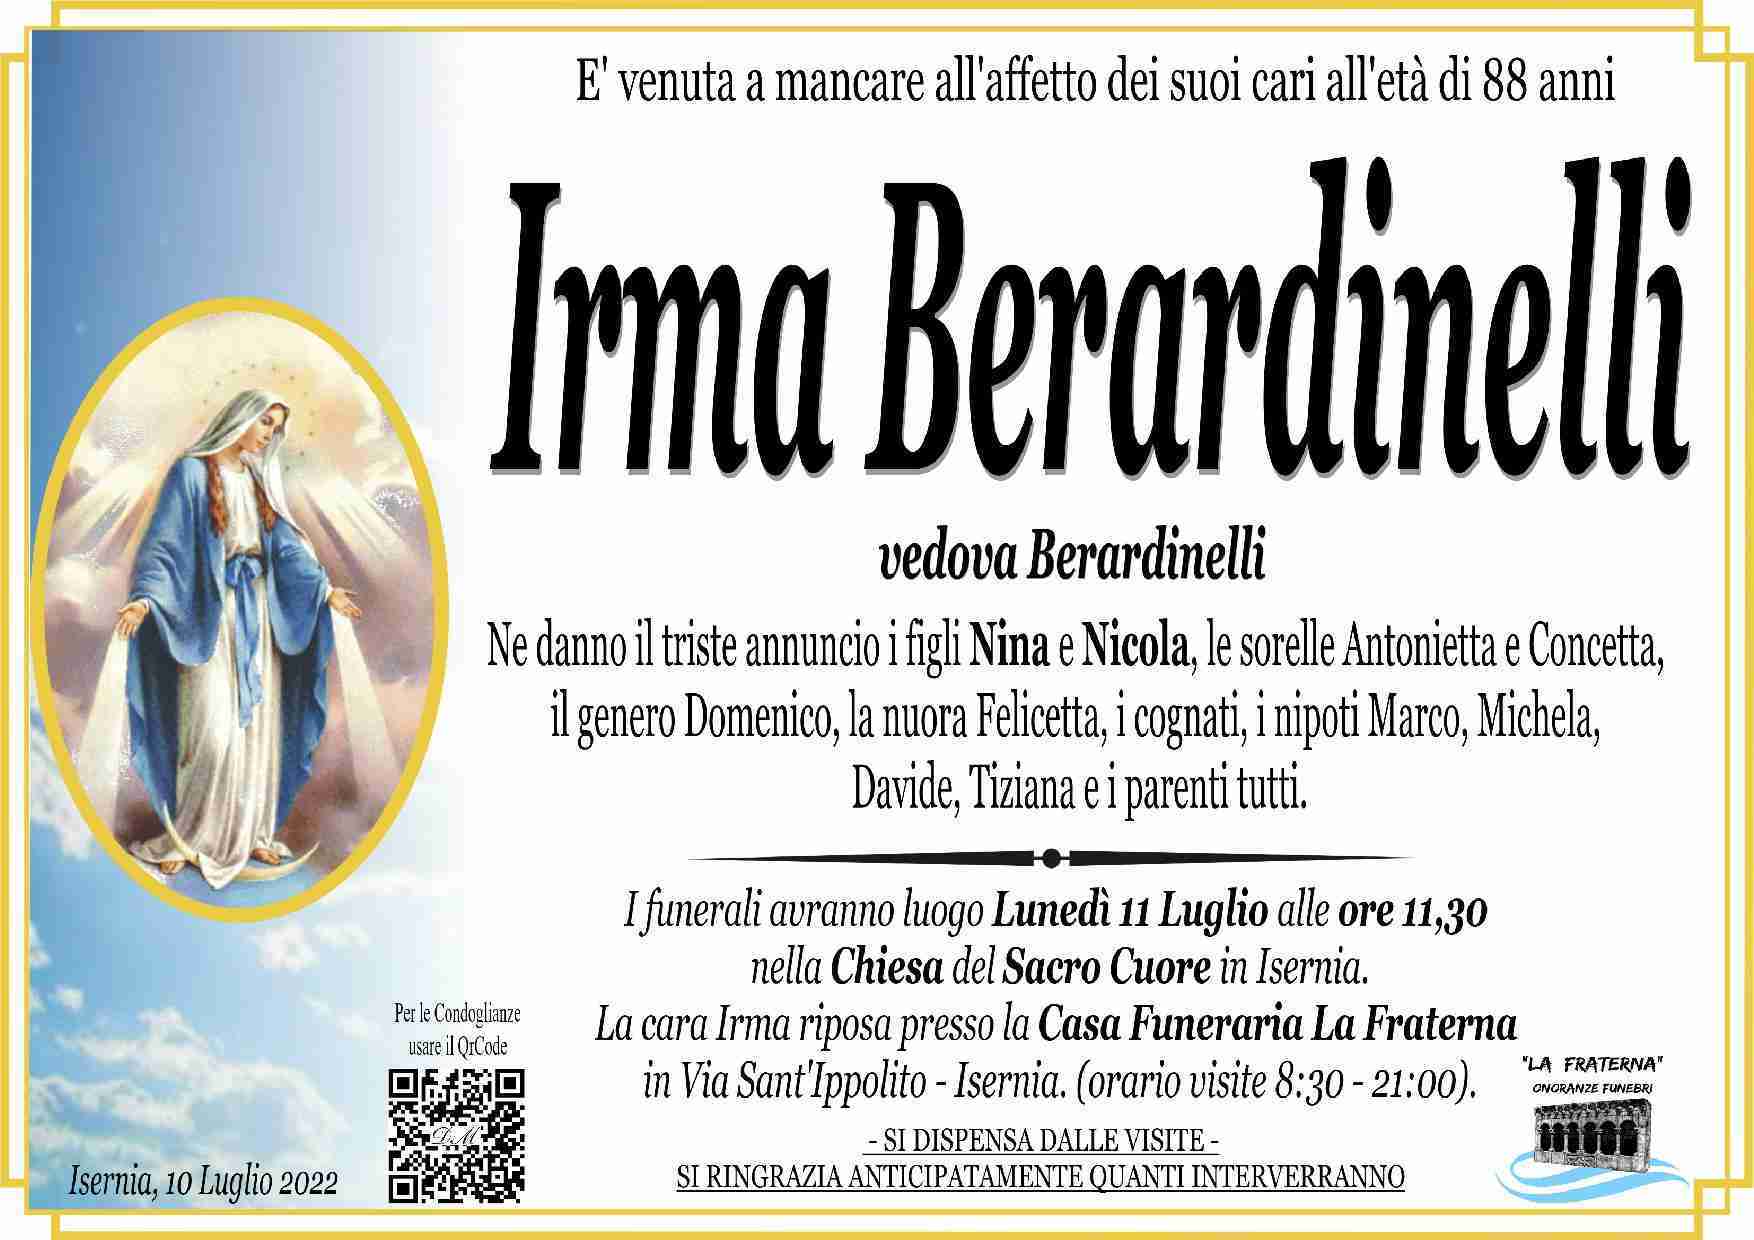 Irma Berardinelli